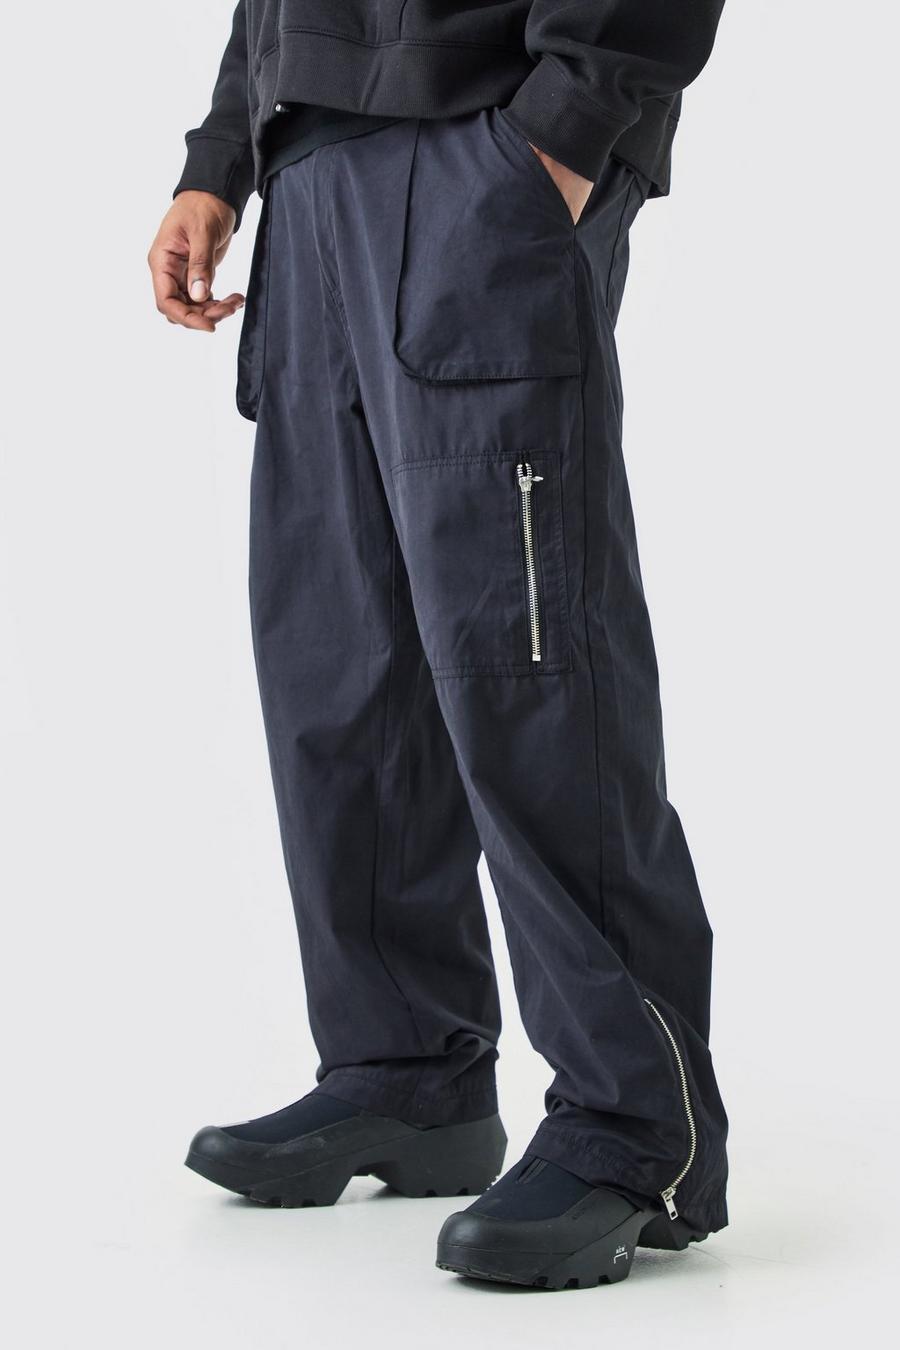 Pantaloni Cargo rilassati Plus Size con vita fissa e fondo vellutato, Black